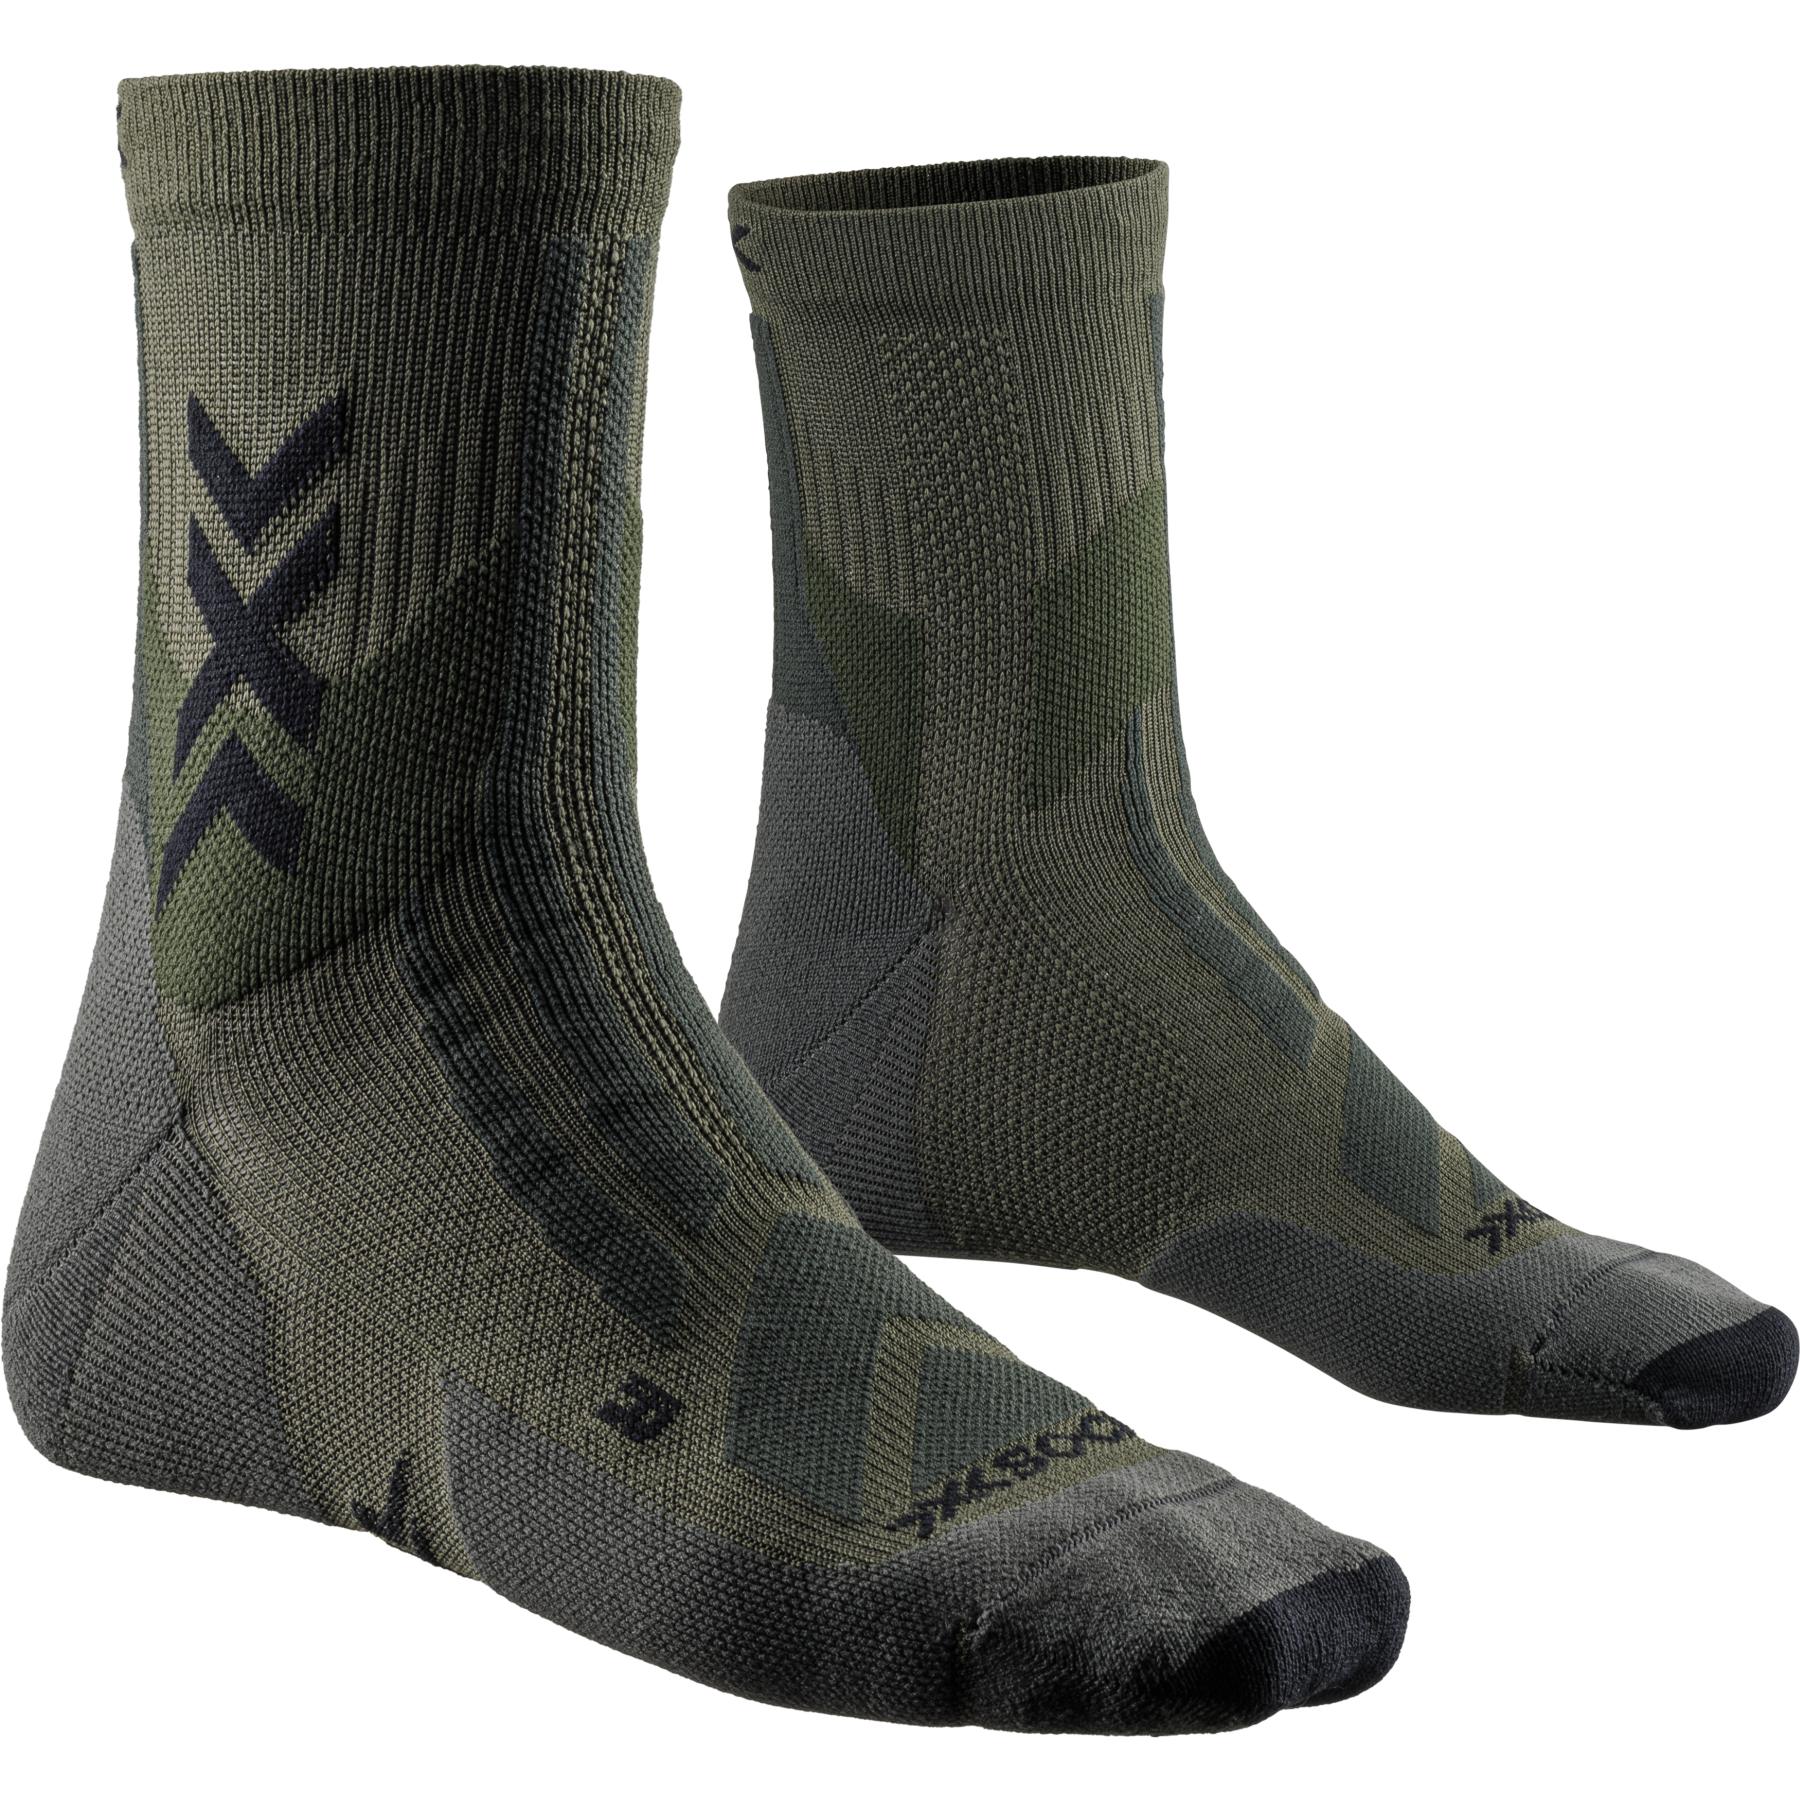 Produktbild von X-Socks Hike Discover Ankle Socken - dark sage/black